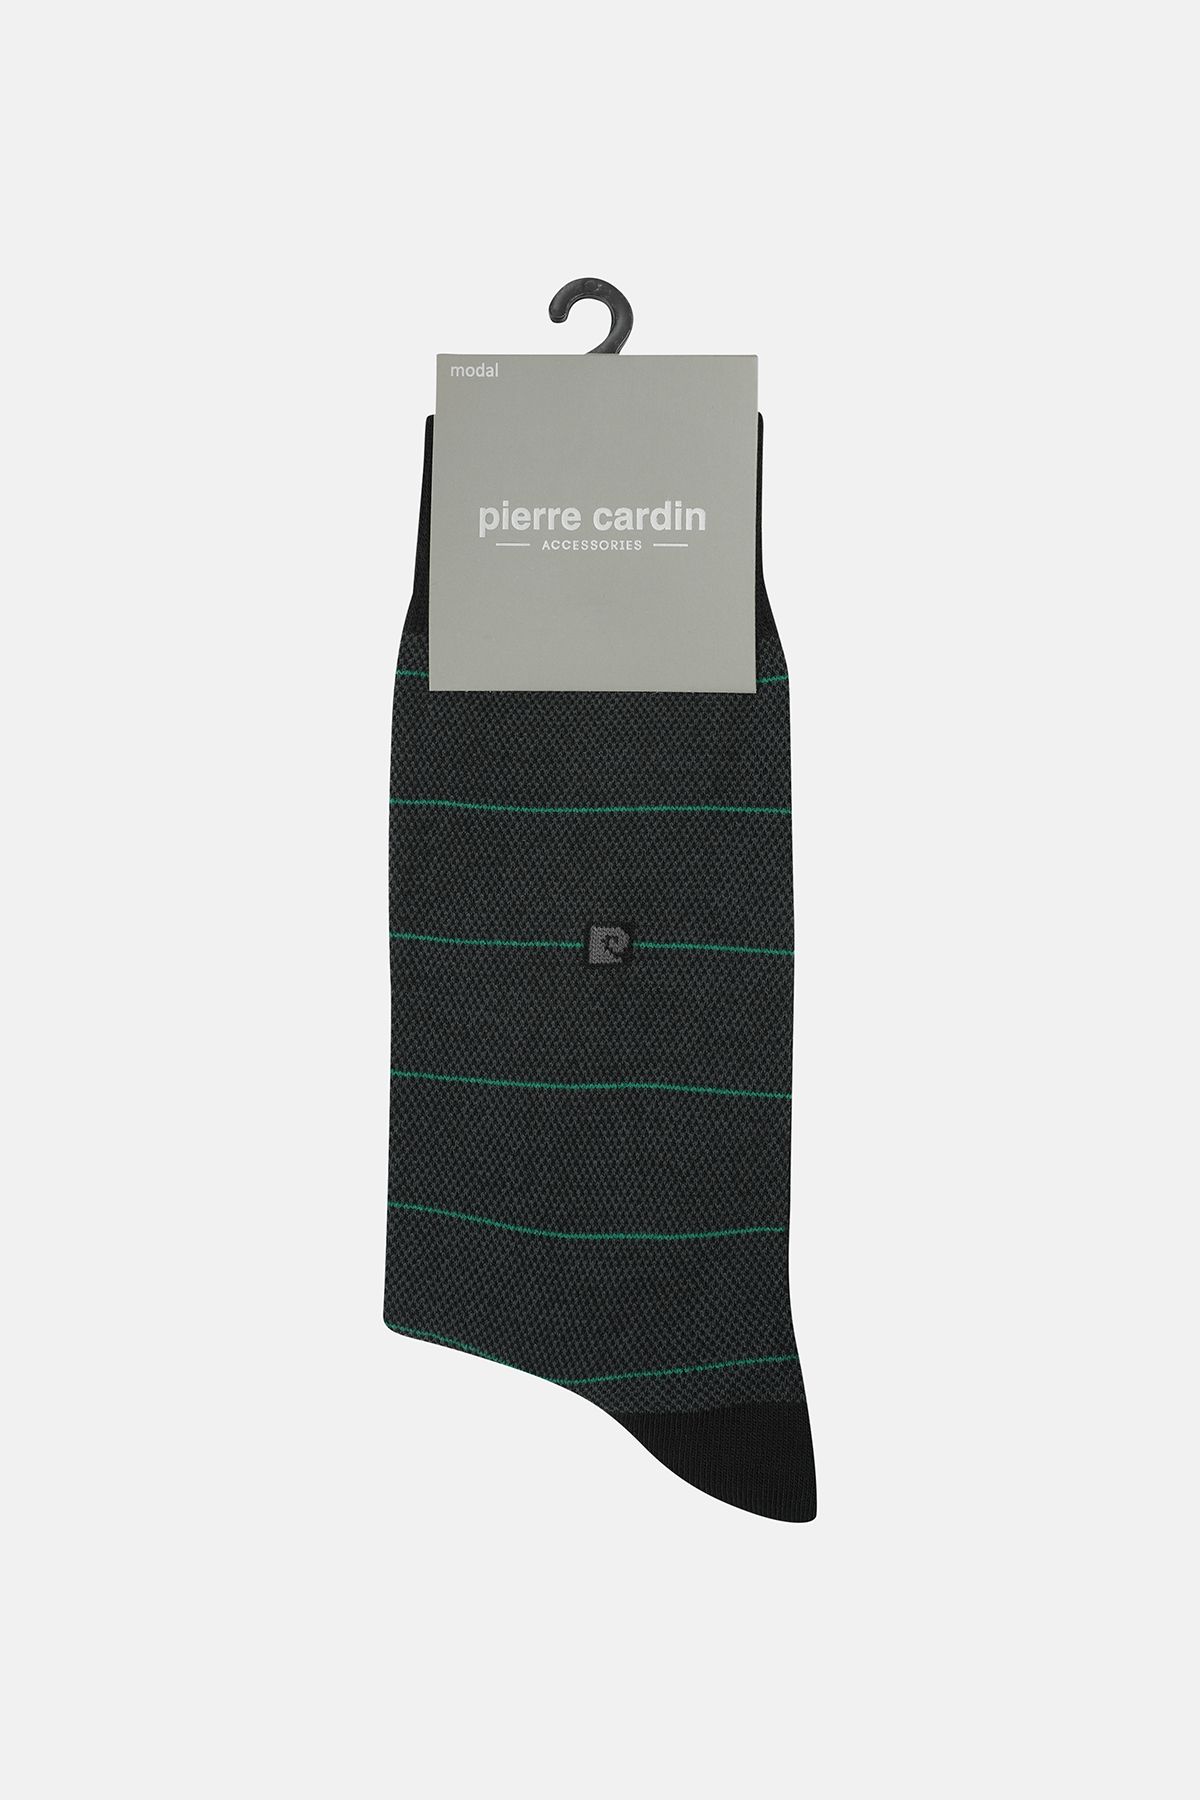 Pierre Cardin Modal 6’lı Çift Renkli Erkek Uzun Soket Çorap Code 258